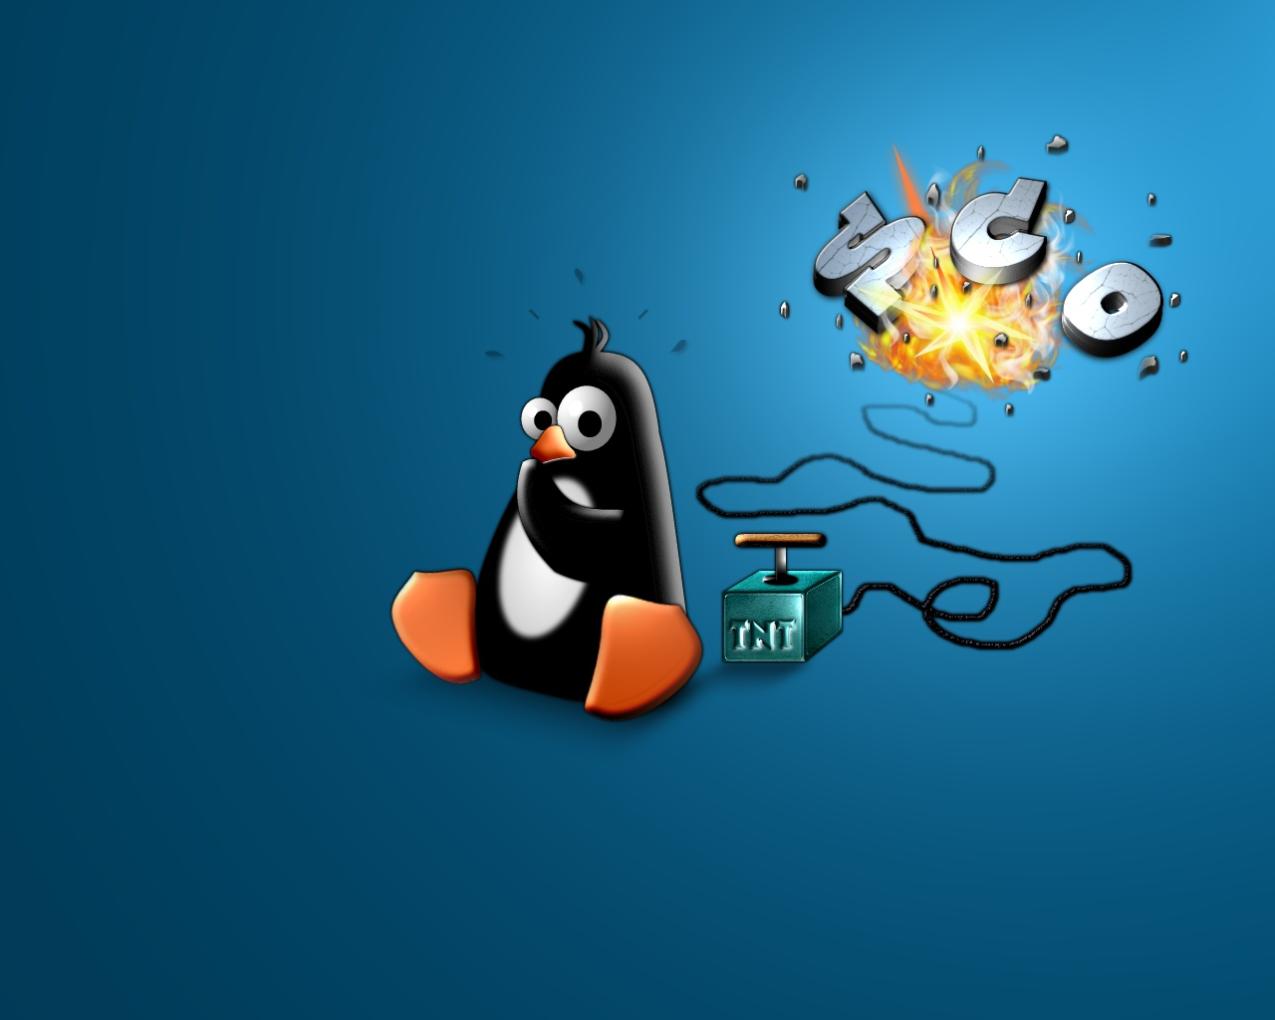 가장 흔한 리눅스 명령줄 오류는 무엇이며 어떻게 해결할 수 있나요?